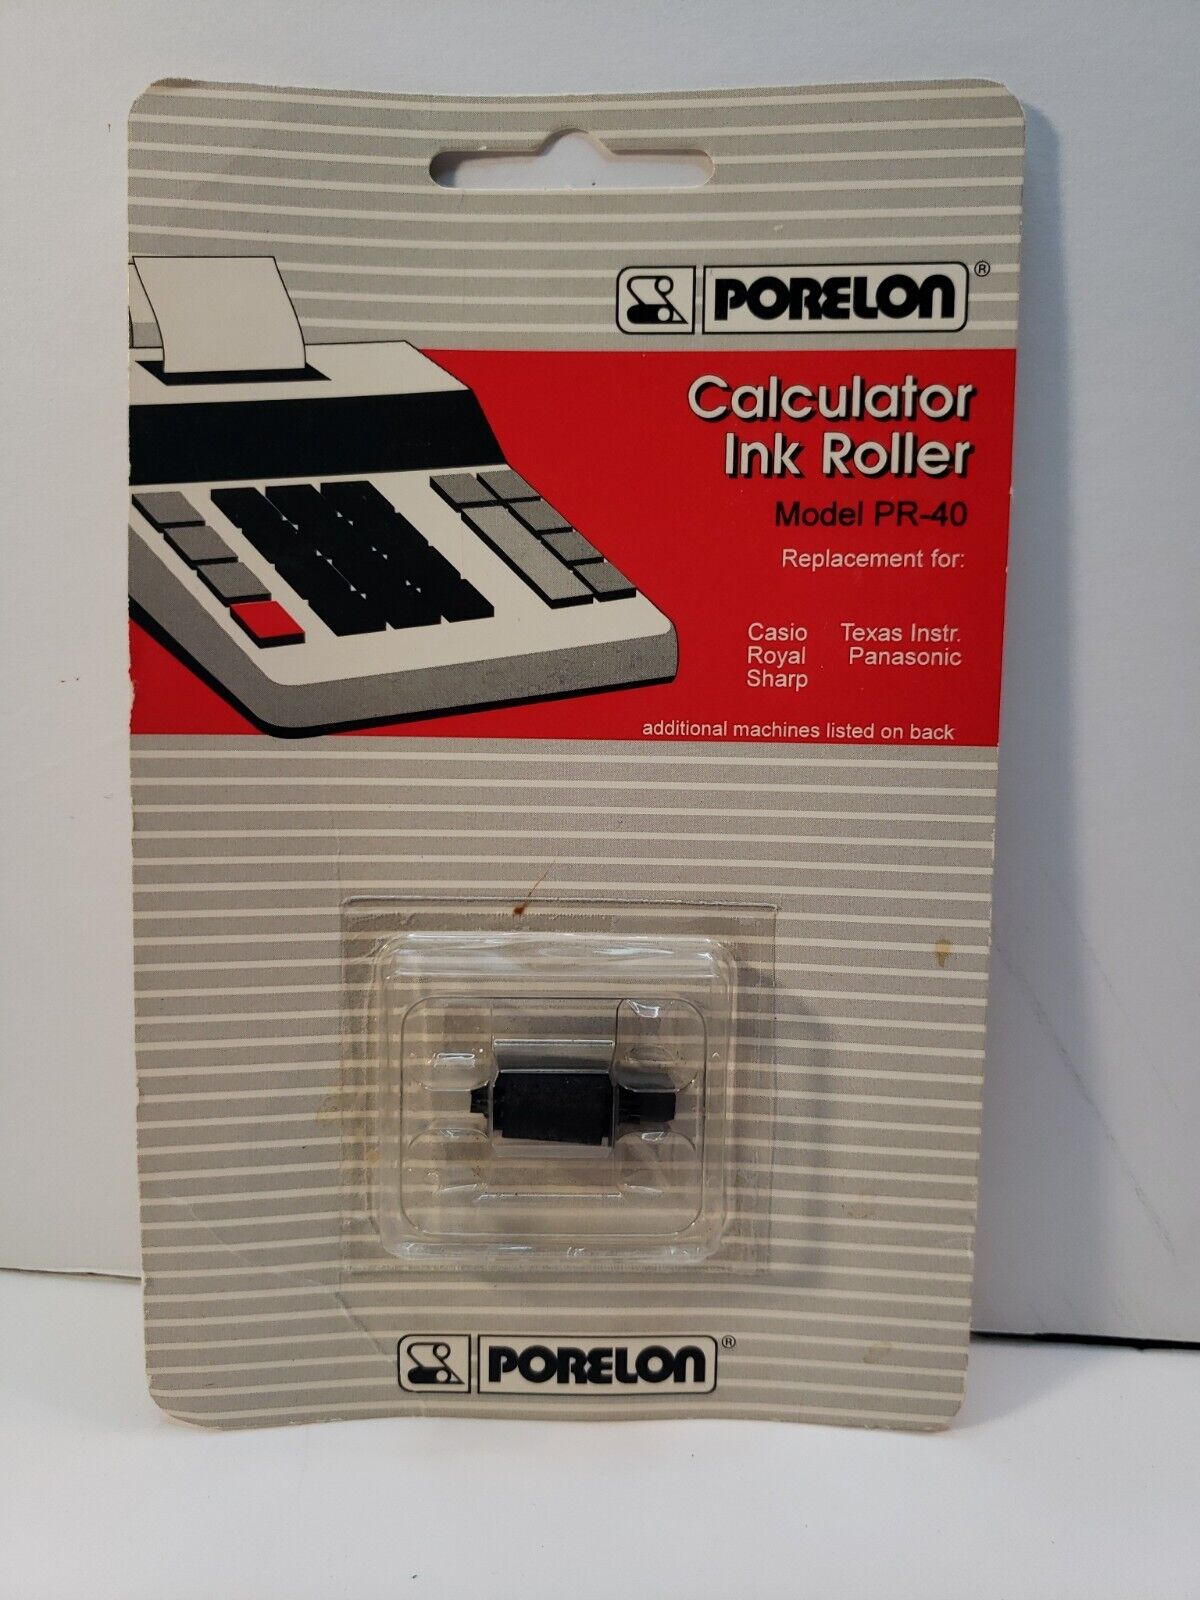 Vtg 1995 Porelon Calculator Ink Roller Model PR-40 Casio Royal Sharp Texas Instr